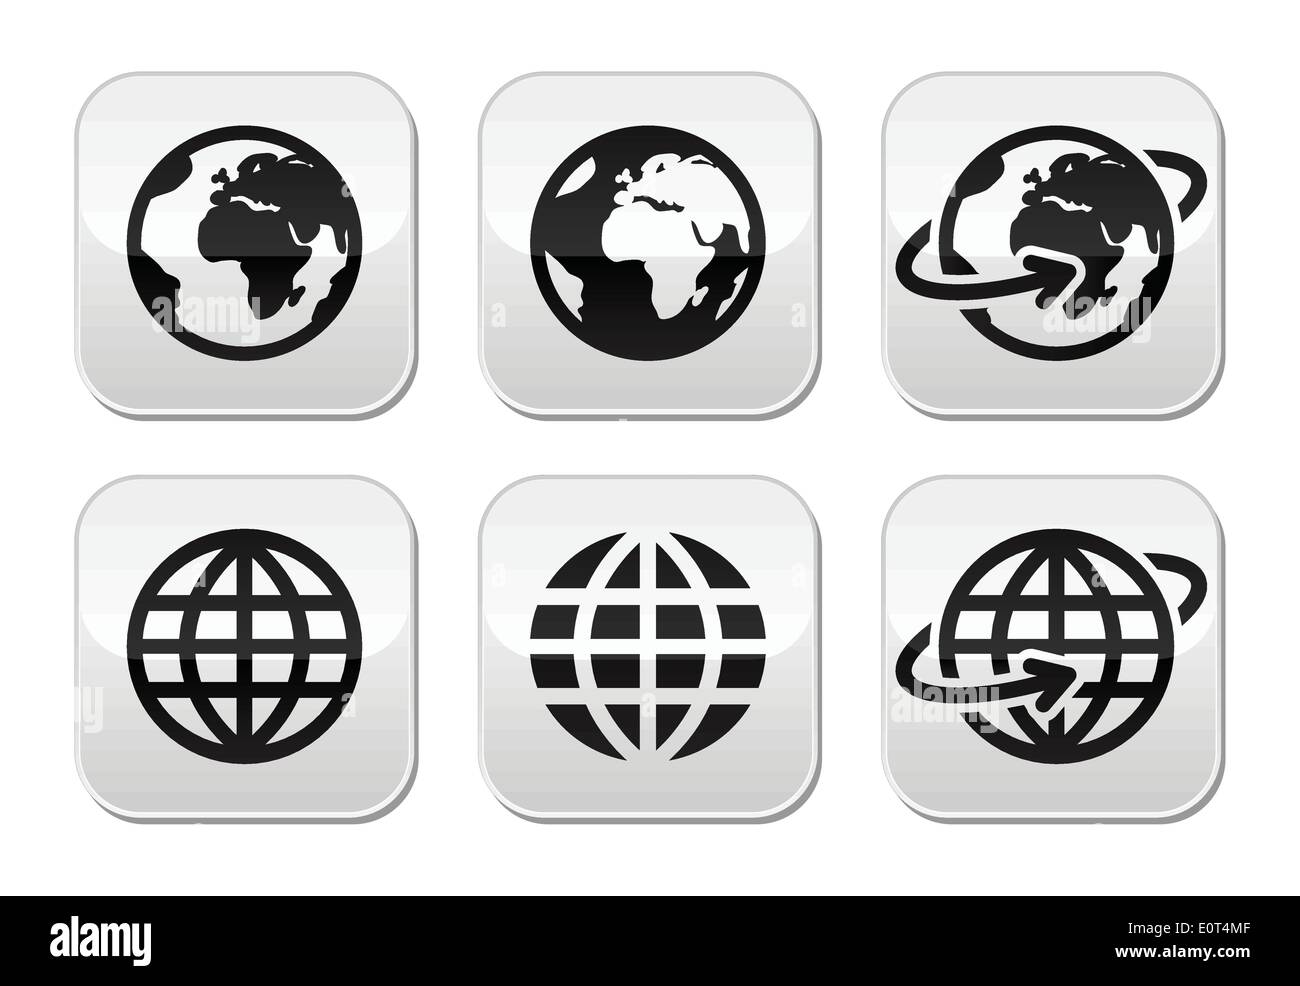 Planète terre avec mains vector icons set avec réflexion Illustration de Vecteur